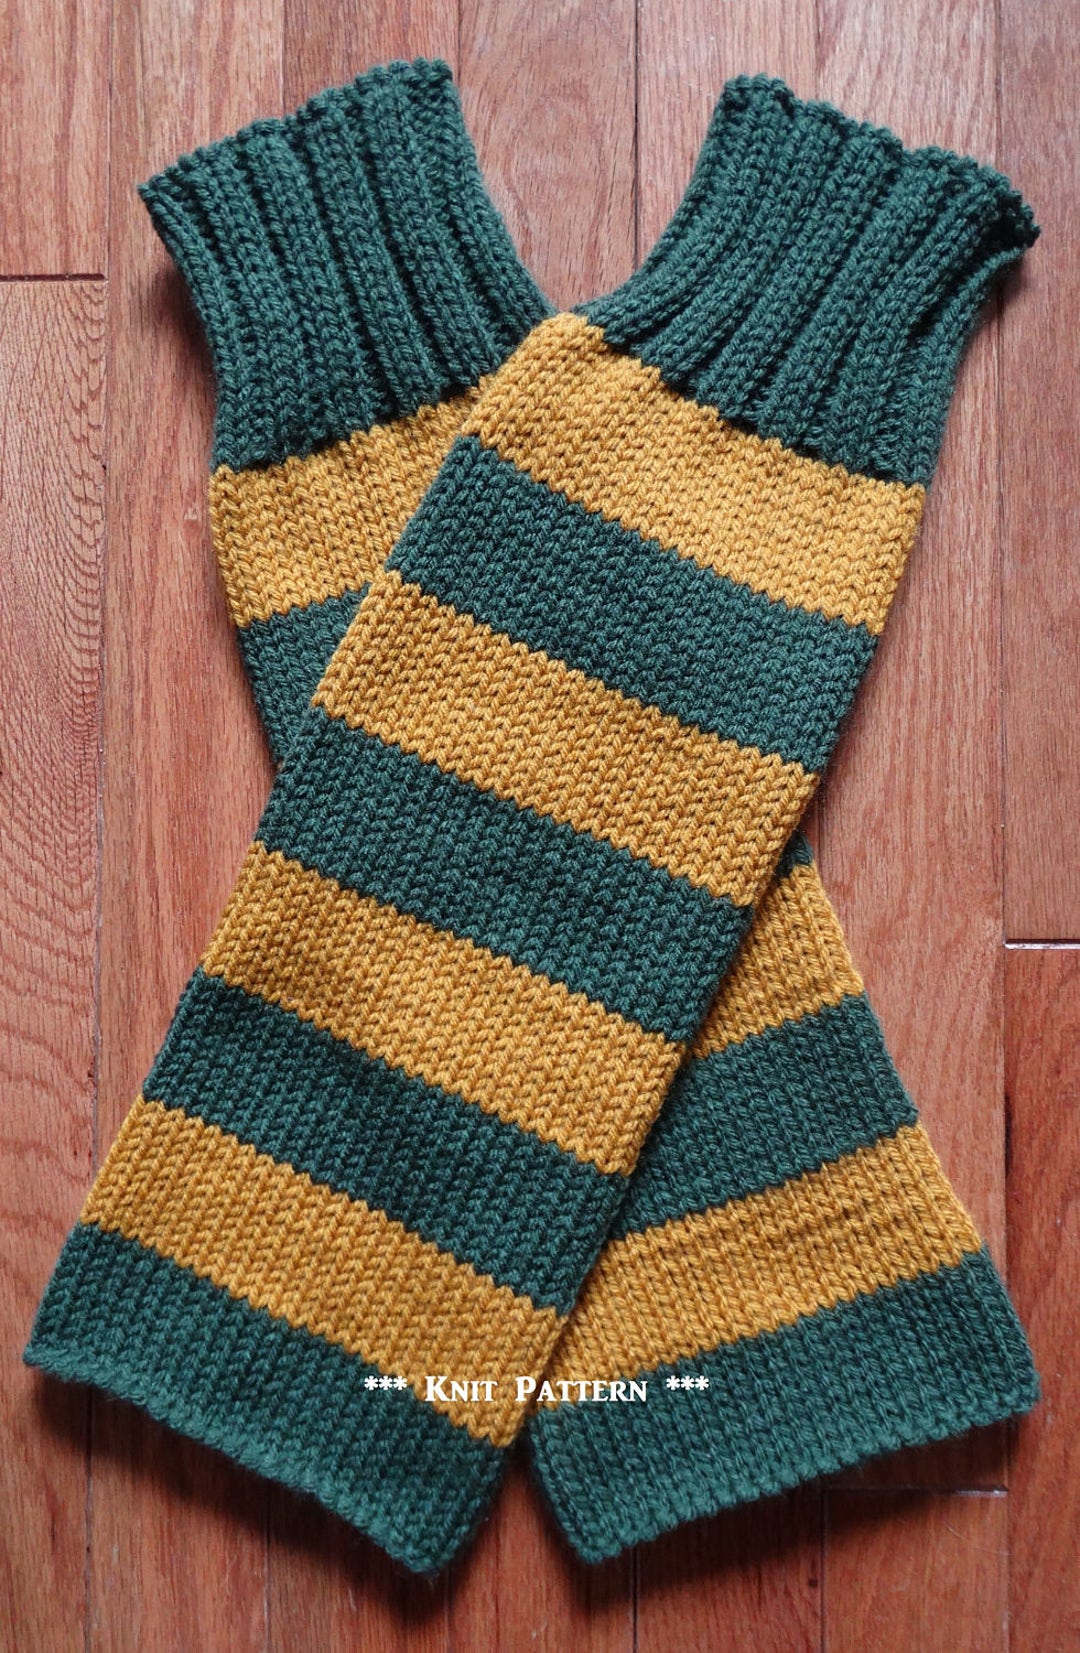 10+ Leg Warmers Free Knitting Pattern  Knit leg warmers free pattern, Leg  warmers pattern, Knit leg warmers pattern